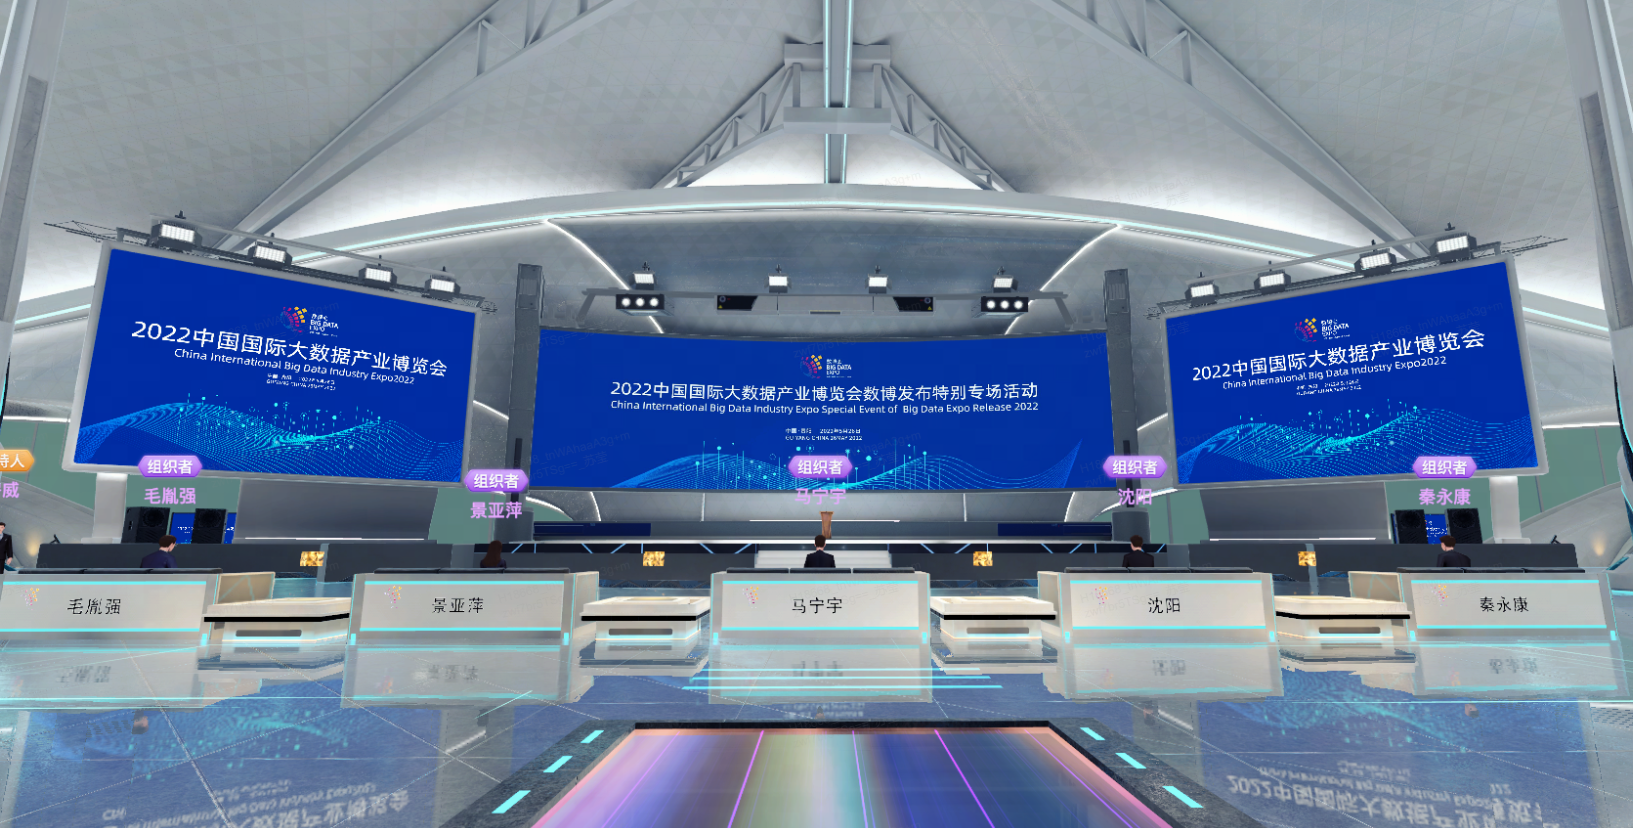 这是一张现代会议中心的照片，显示有屏幕展示2022年信息，前方有排列整齐的接待台和炫彩的地面灯光。